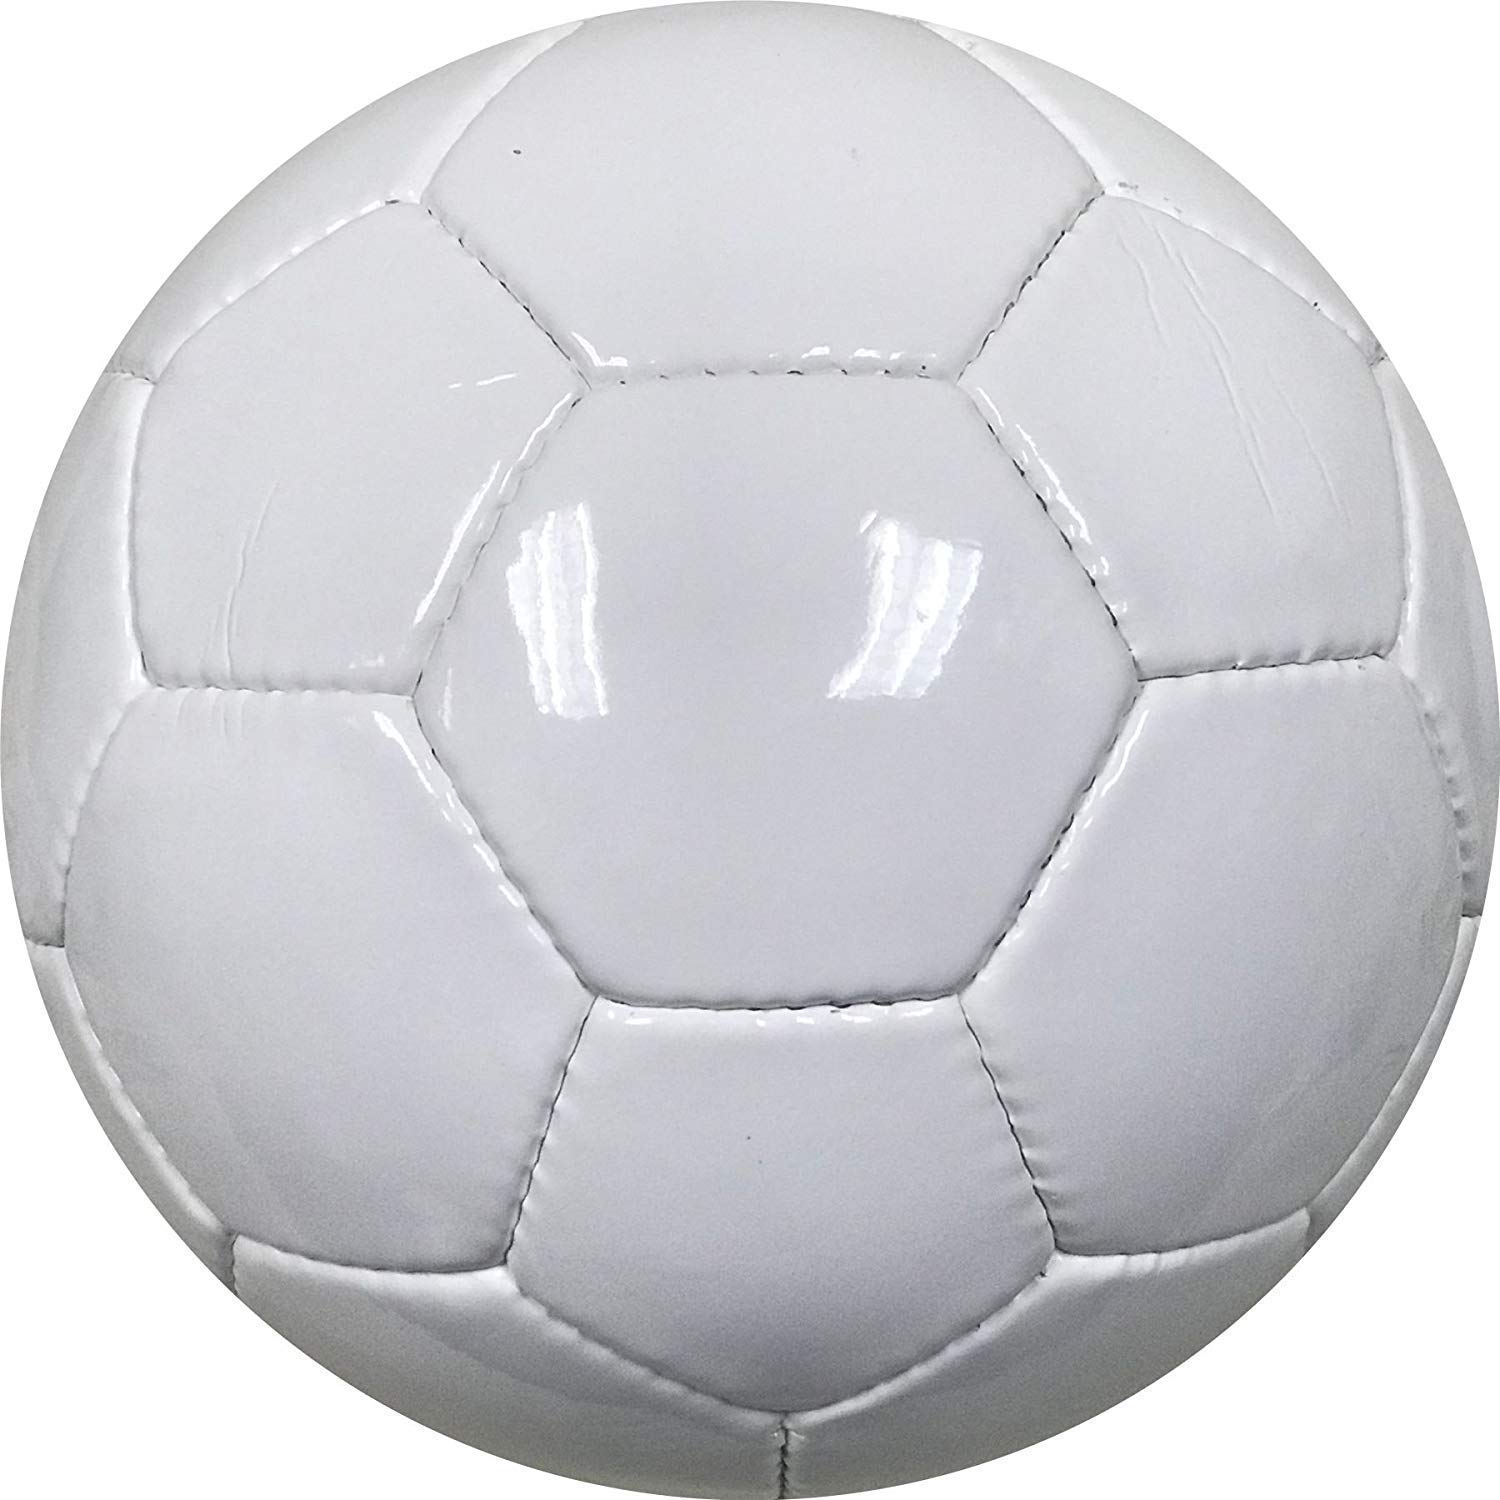 BESTSOCCERBUYS.COM BESTSOccERBUYScOM All White Plain Soccer Ball (Size 5, Plain White)